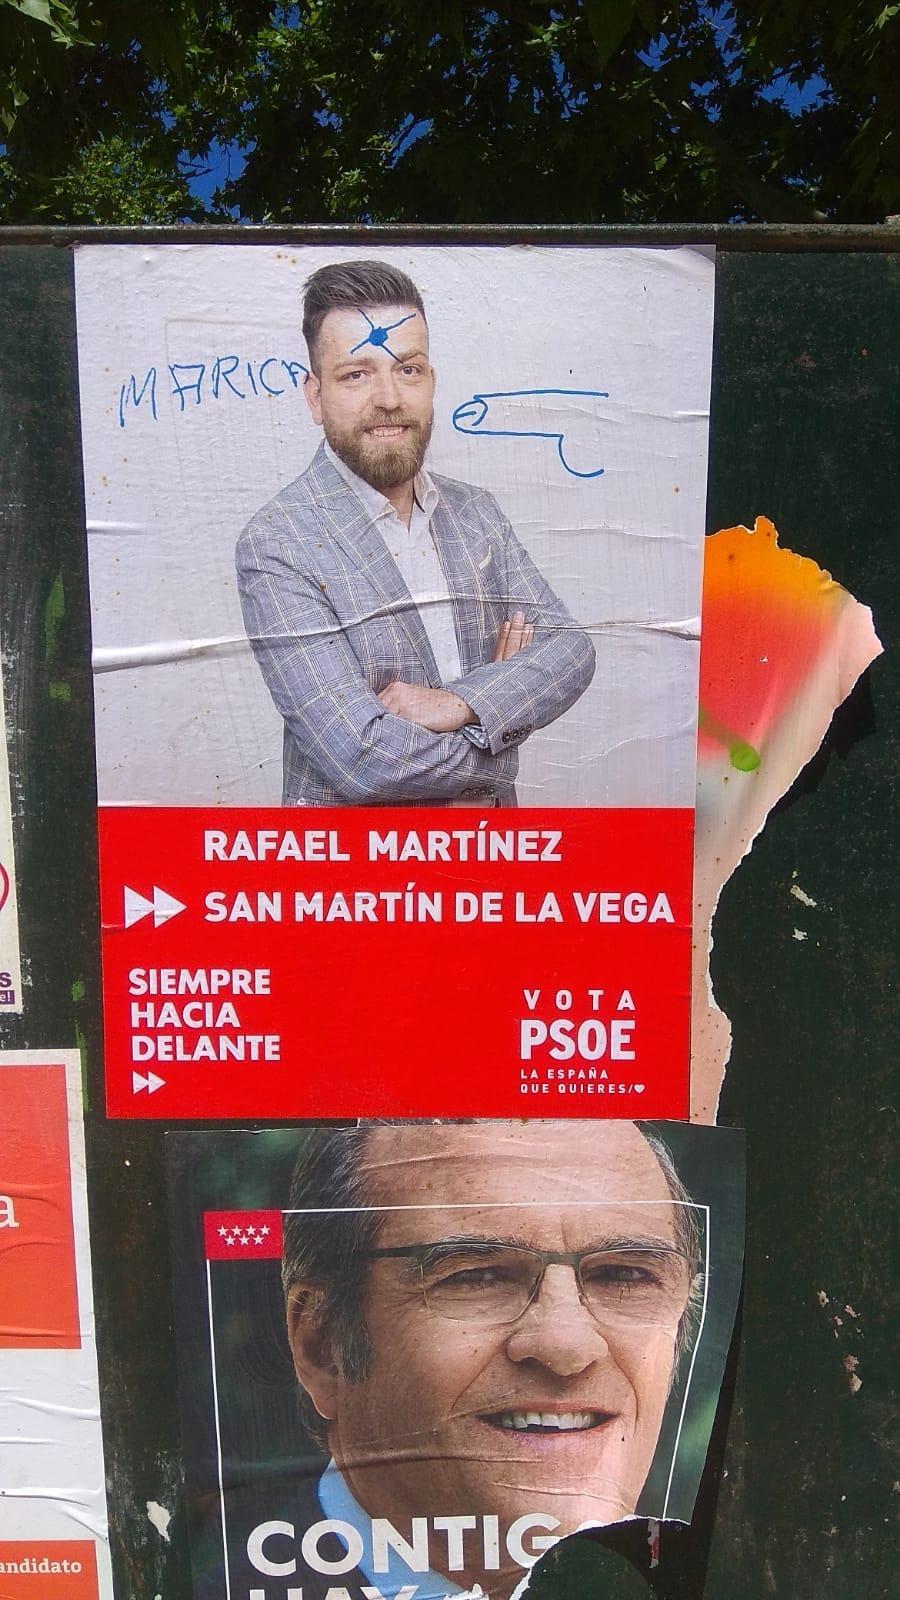 Cartel electoral vandalizado - Facebook Rafa Martínez